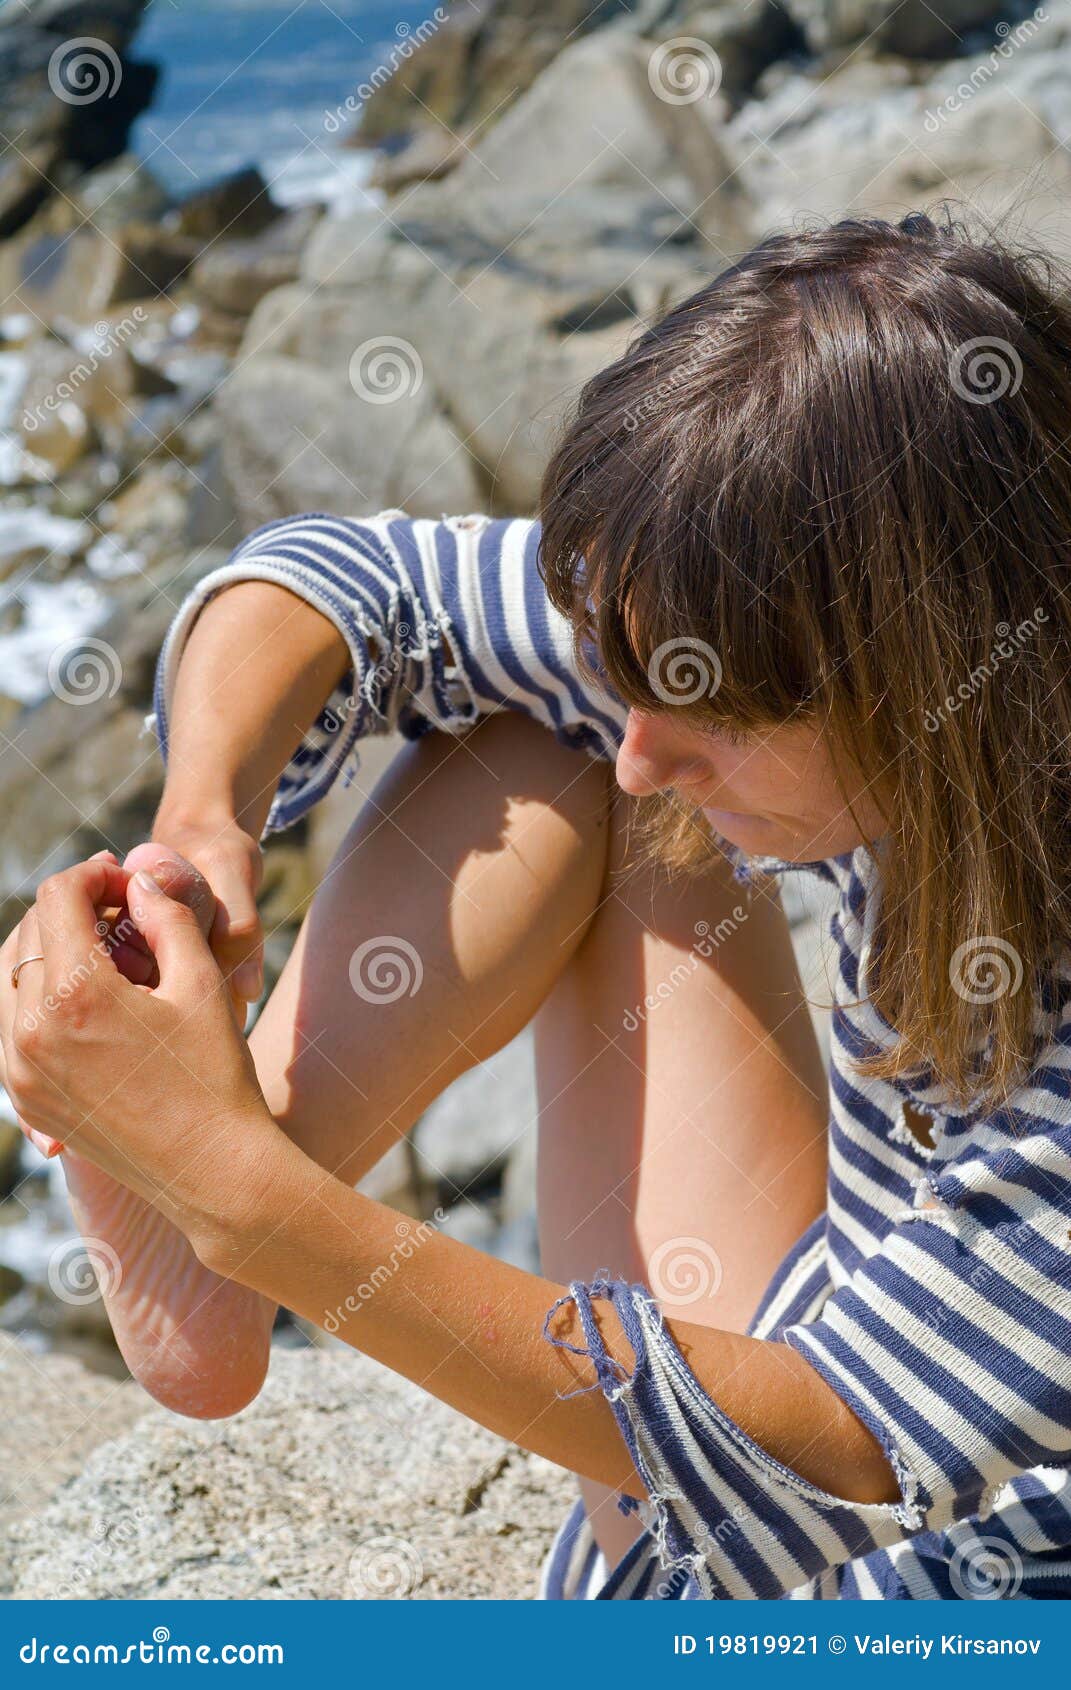 woman with splinter in foot 1